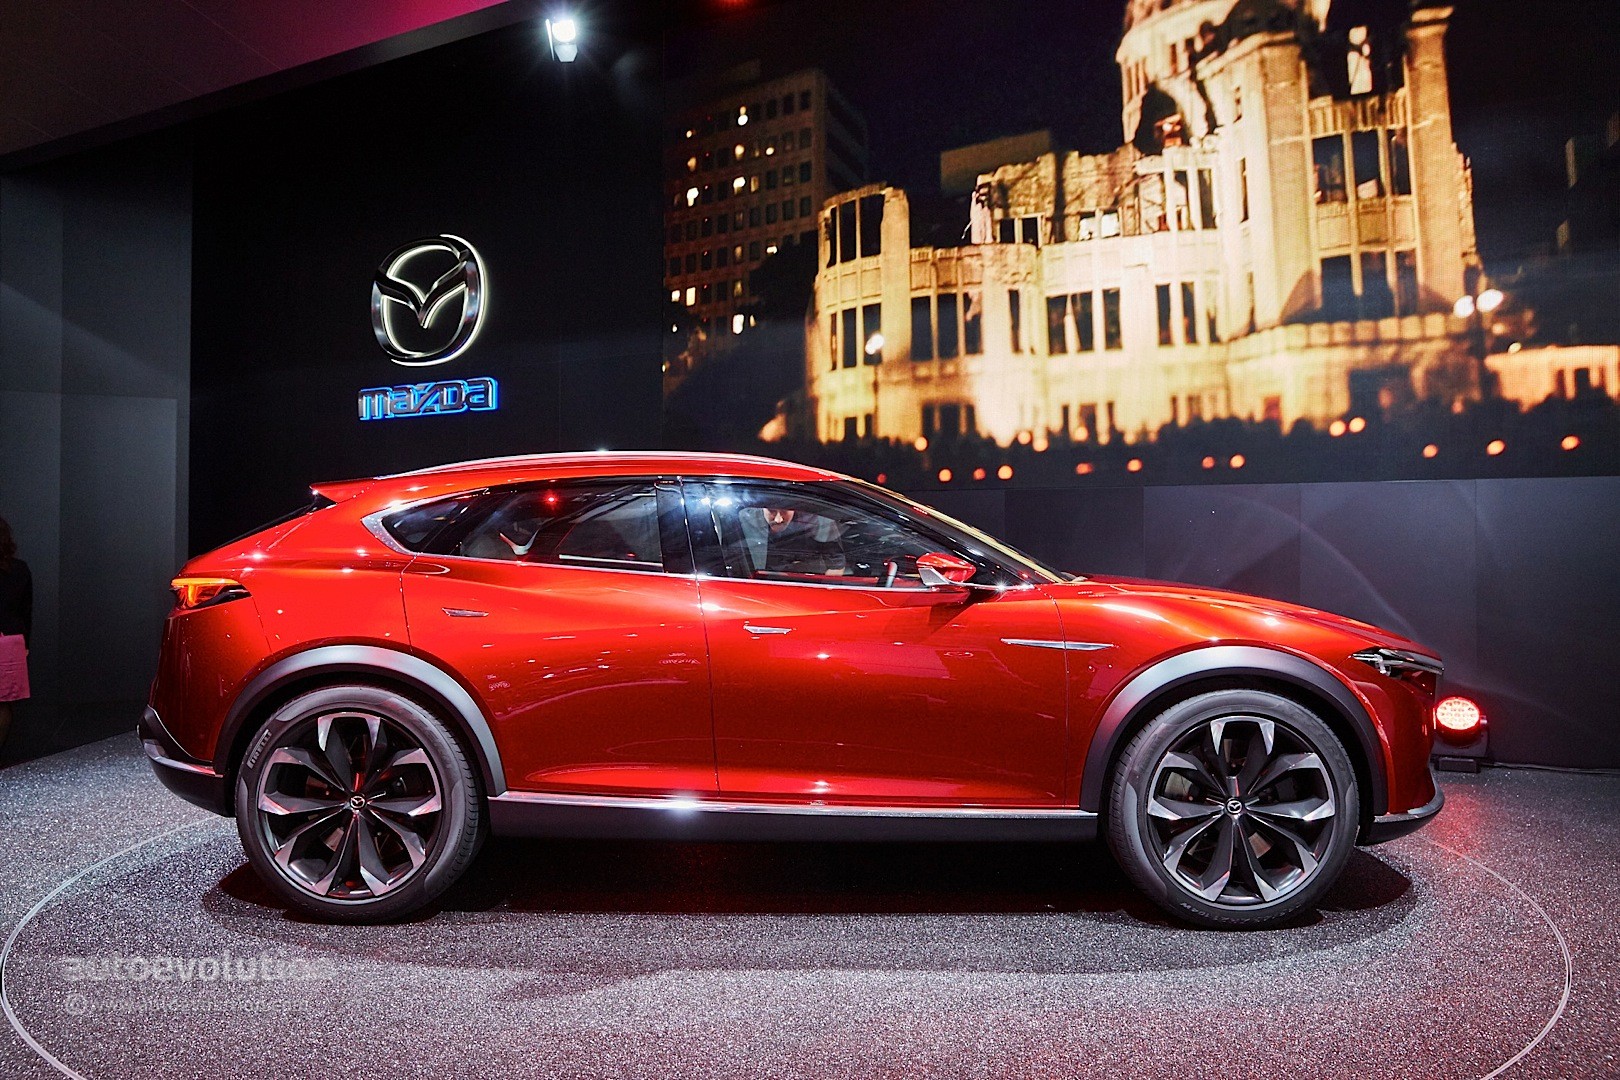 Mazda CX-5 thế hệ mới sắp lên sàn, đòi ‘đánh bật’ BMW X3 bằng động cơ siêu khủng ảnh 2